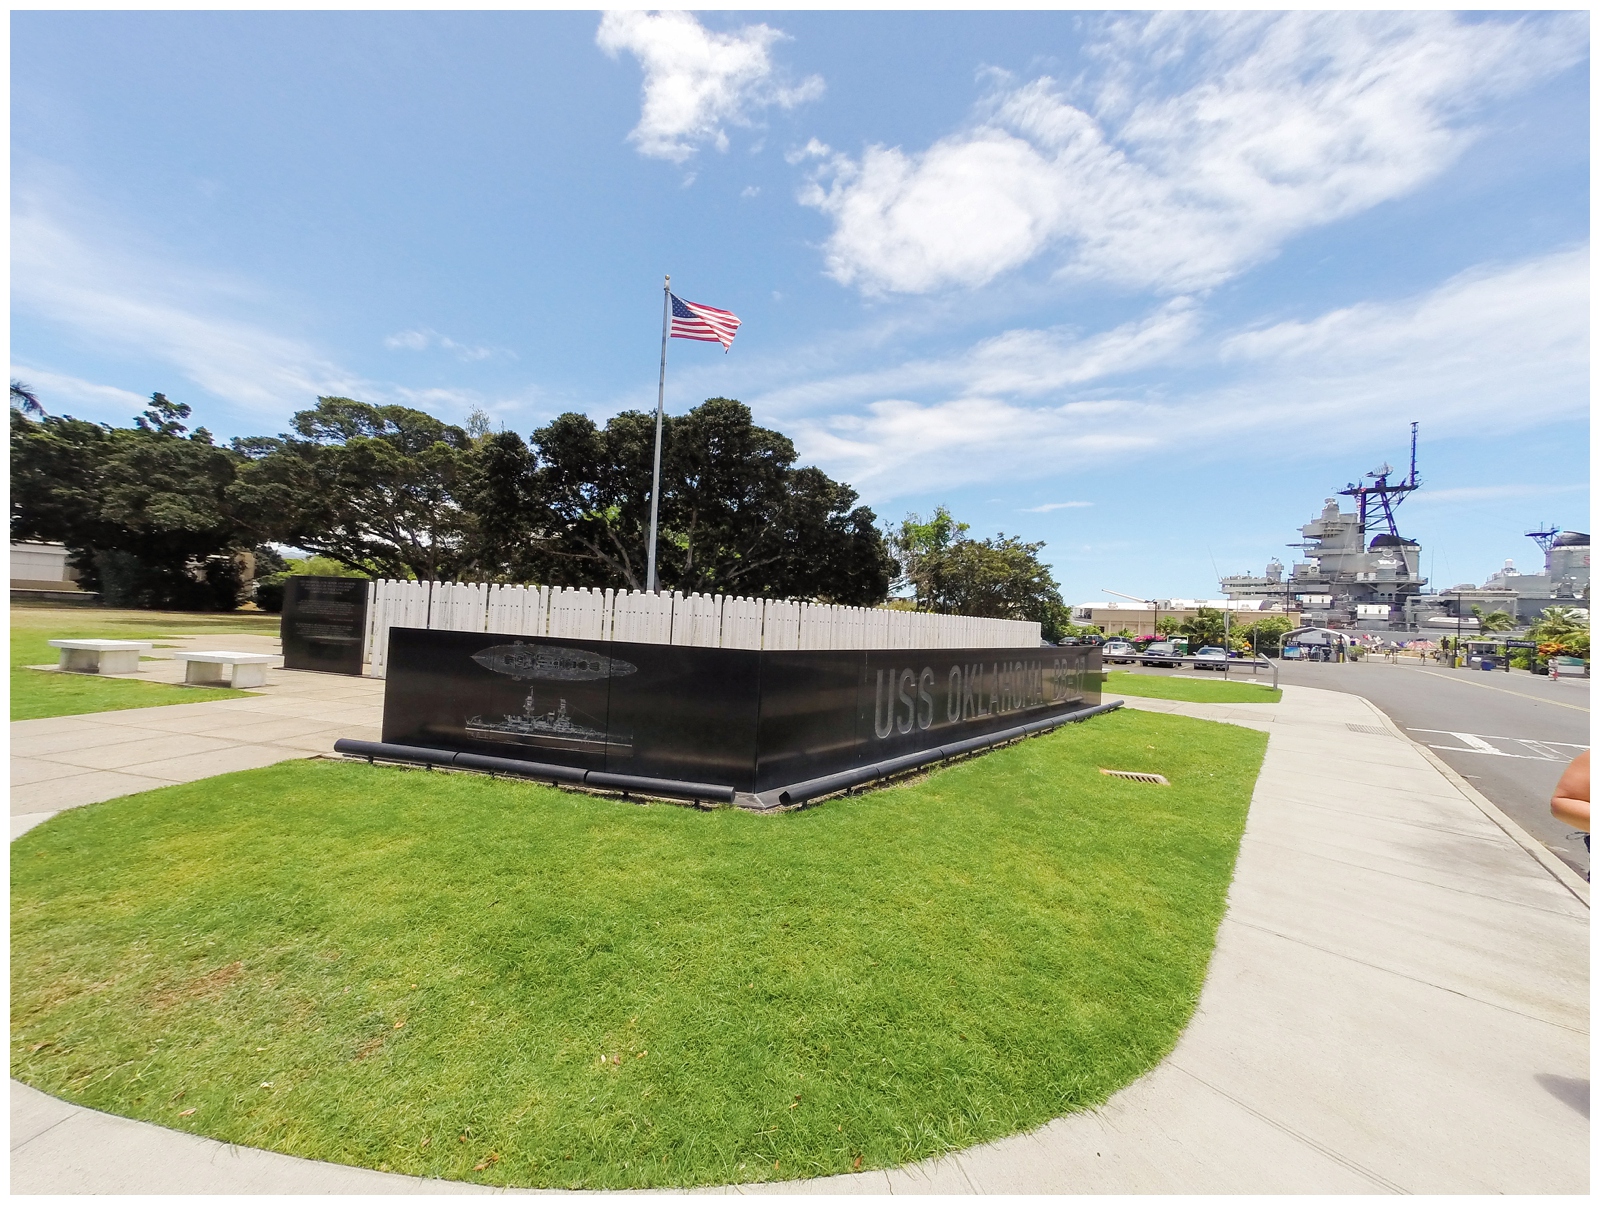 USS Oklahoma memorial